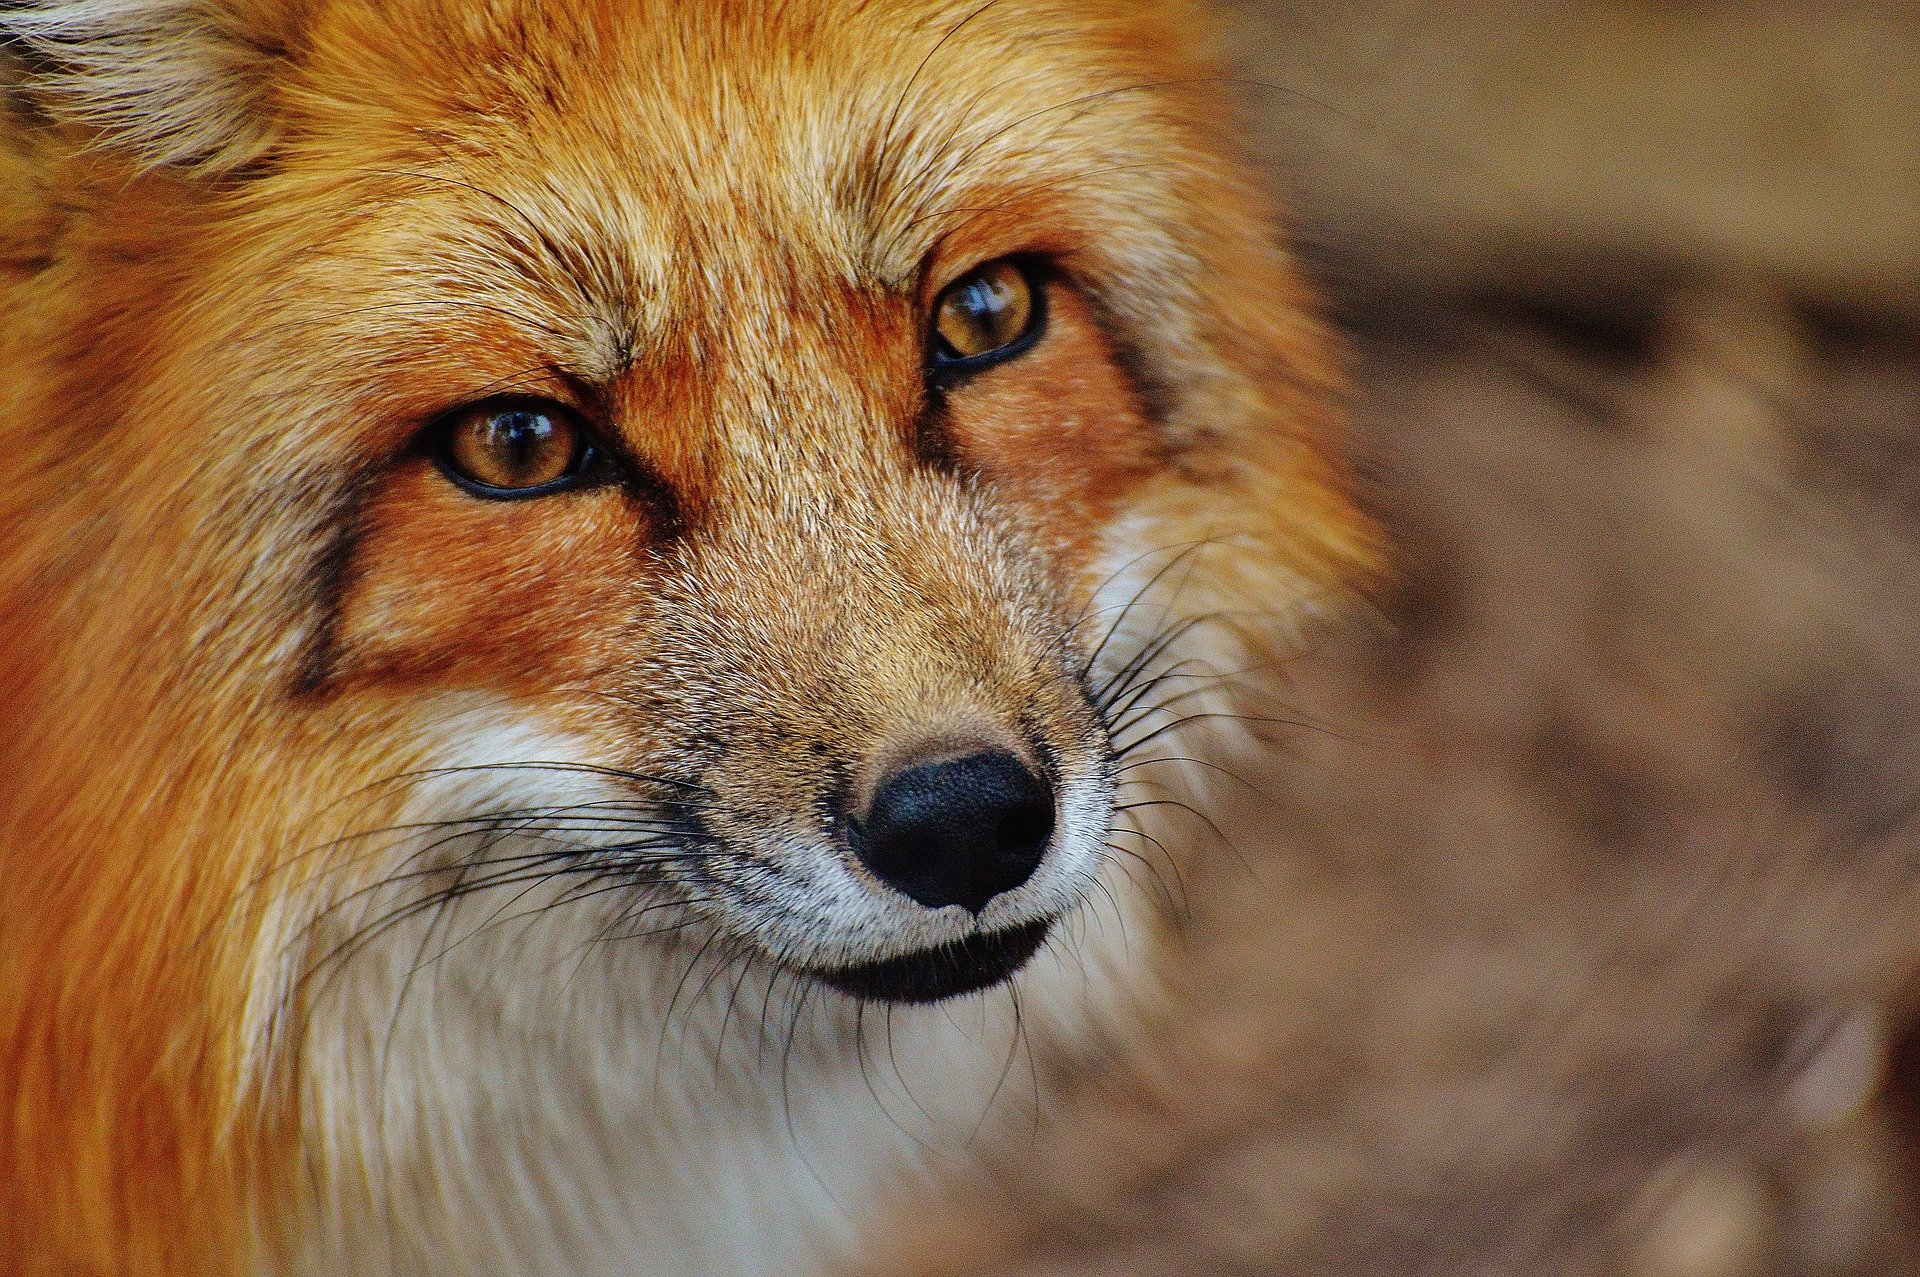 Veszett rókát találtak Magyarországon - Ebzárlatot rendeltek el Szabolcsban